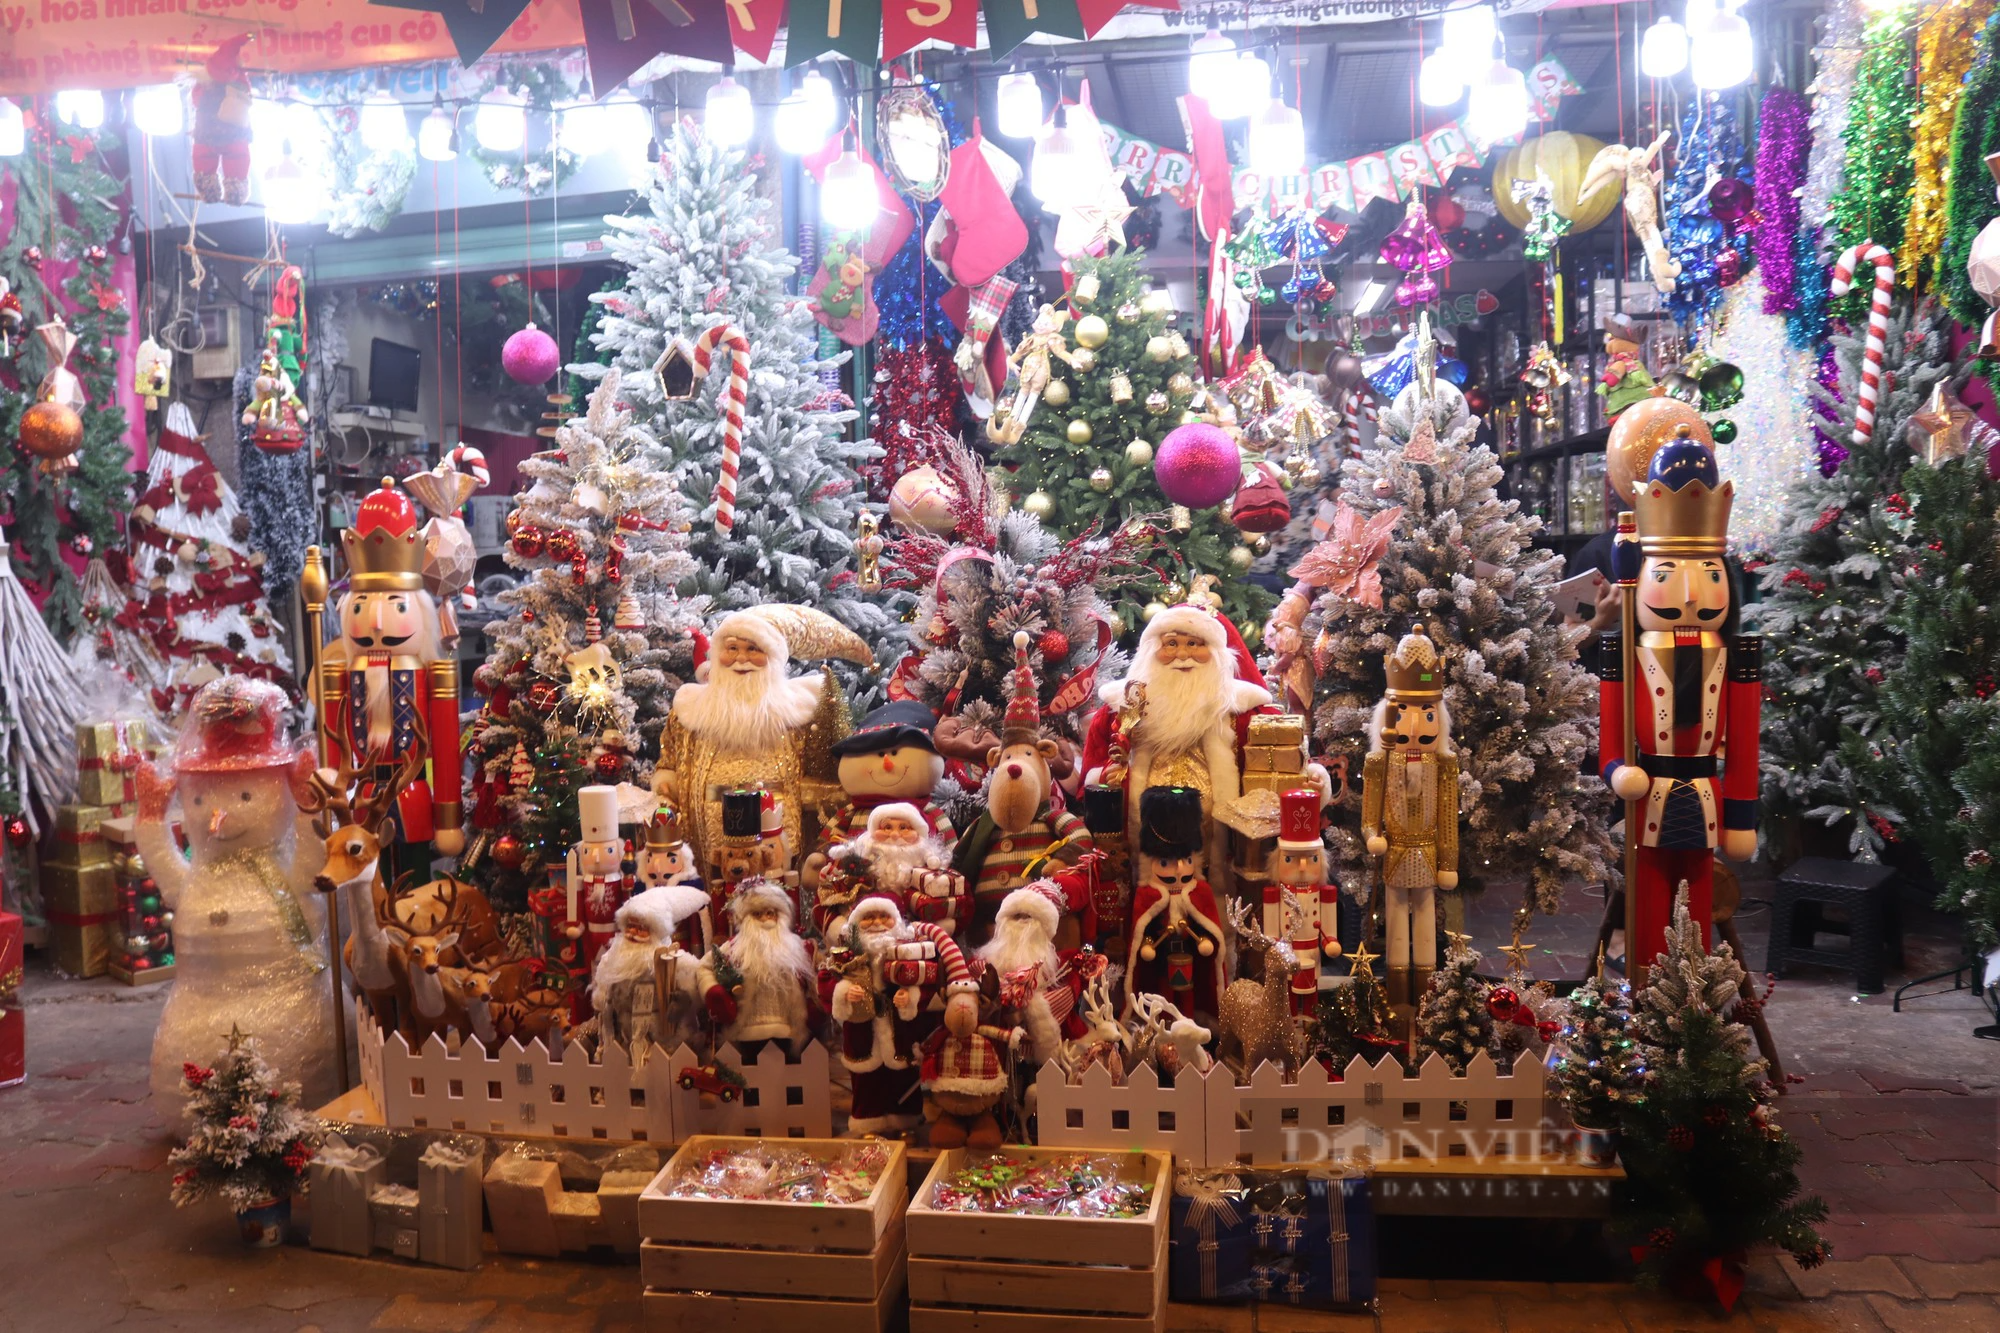 Con đường Giáng sinh lớn nhất Sài Gòn đã “lên đồ”, khách tấp nập mua thông về chơi Noel sớm - Ảnh 4.